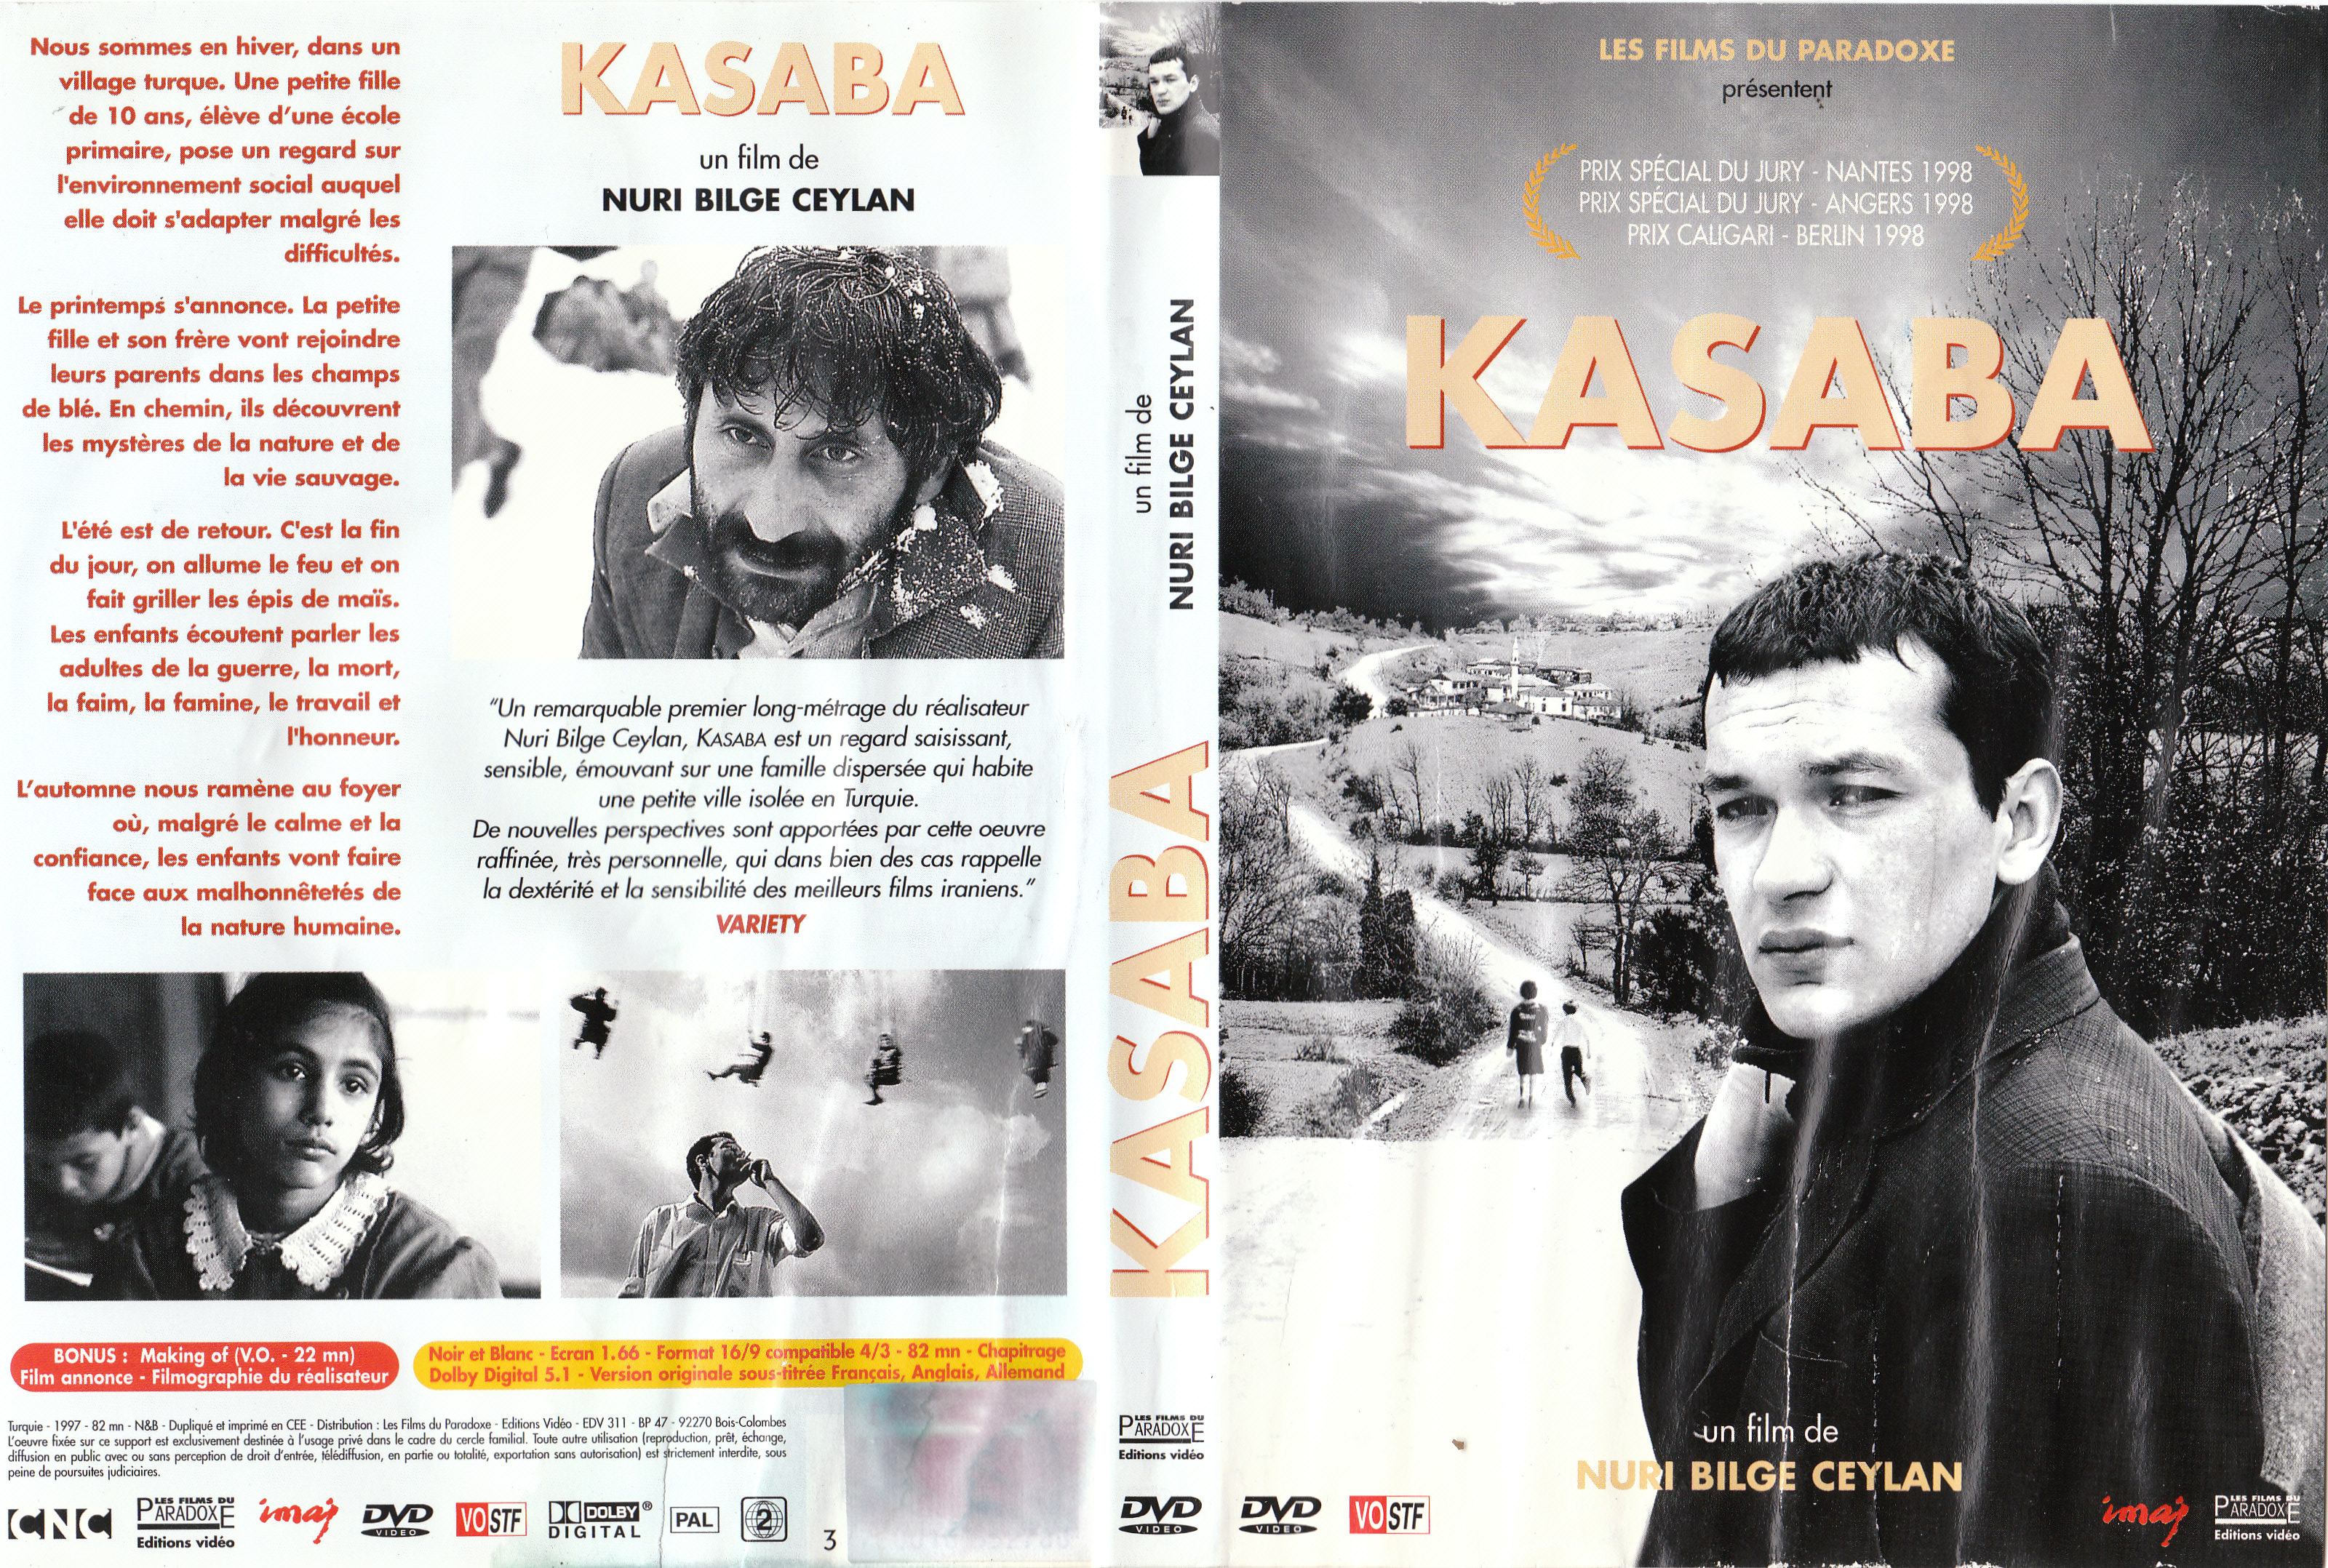 Jaquette DVD Kasaba